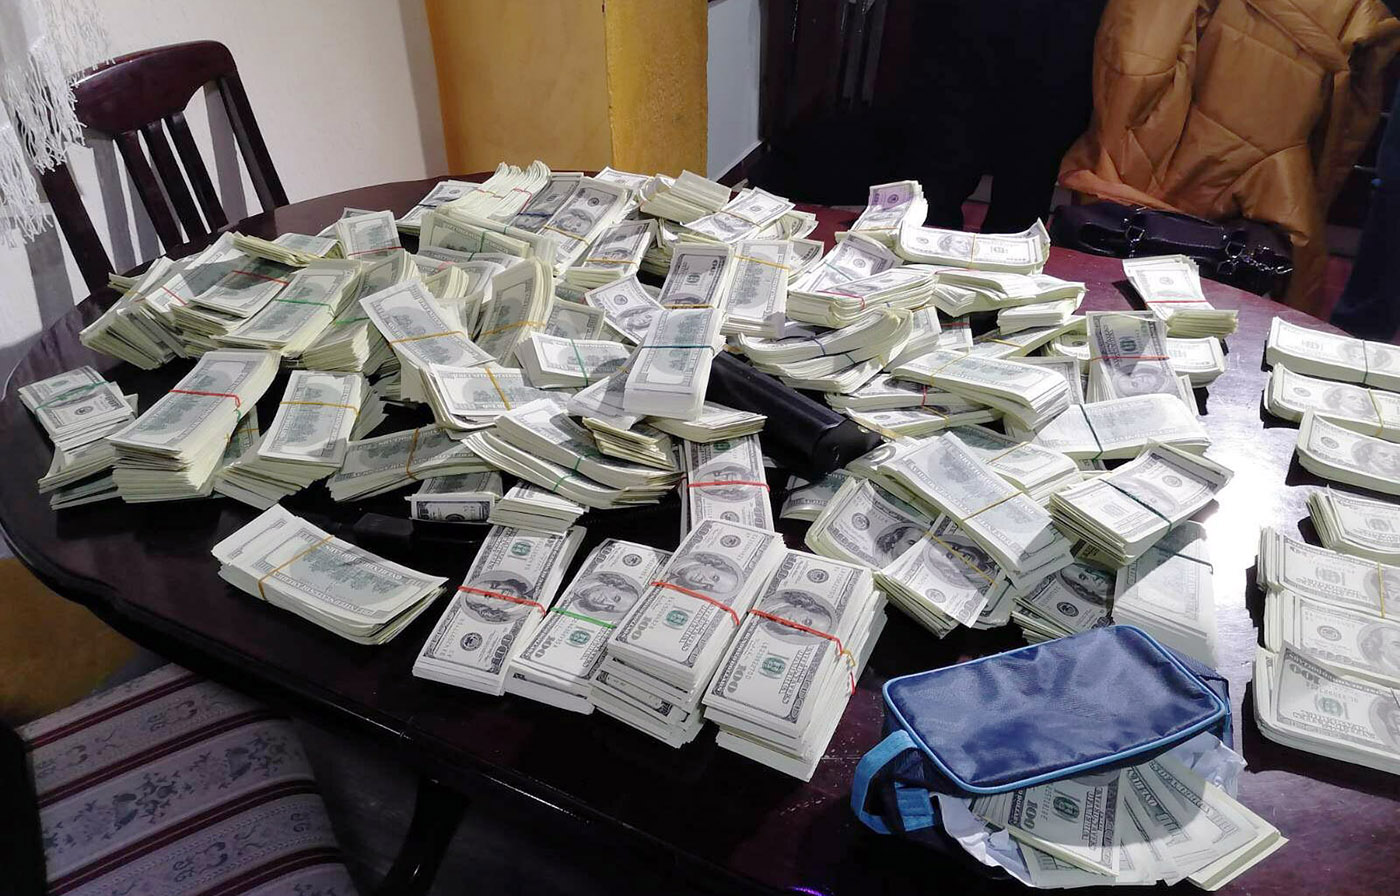 Ухапшени осумњичени за фалсификовање новца у вредности од 2.056.400 америчких долара